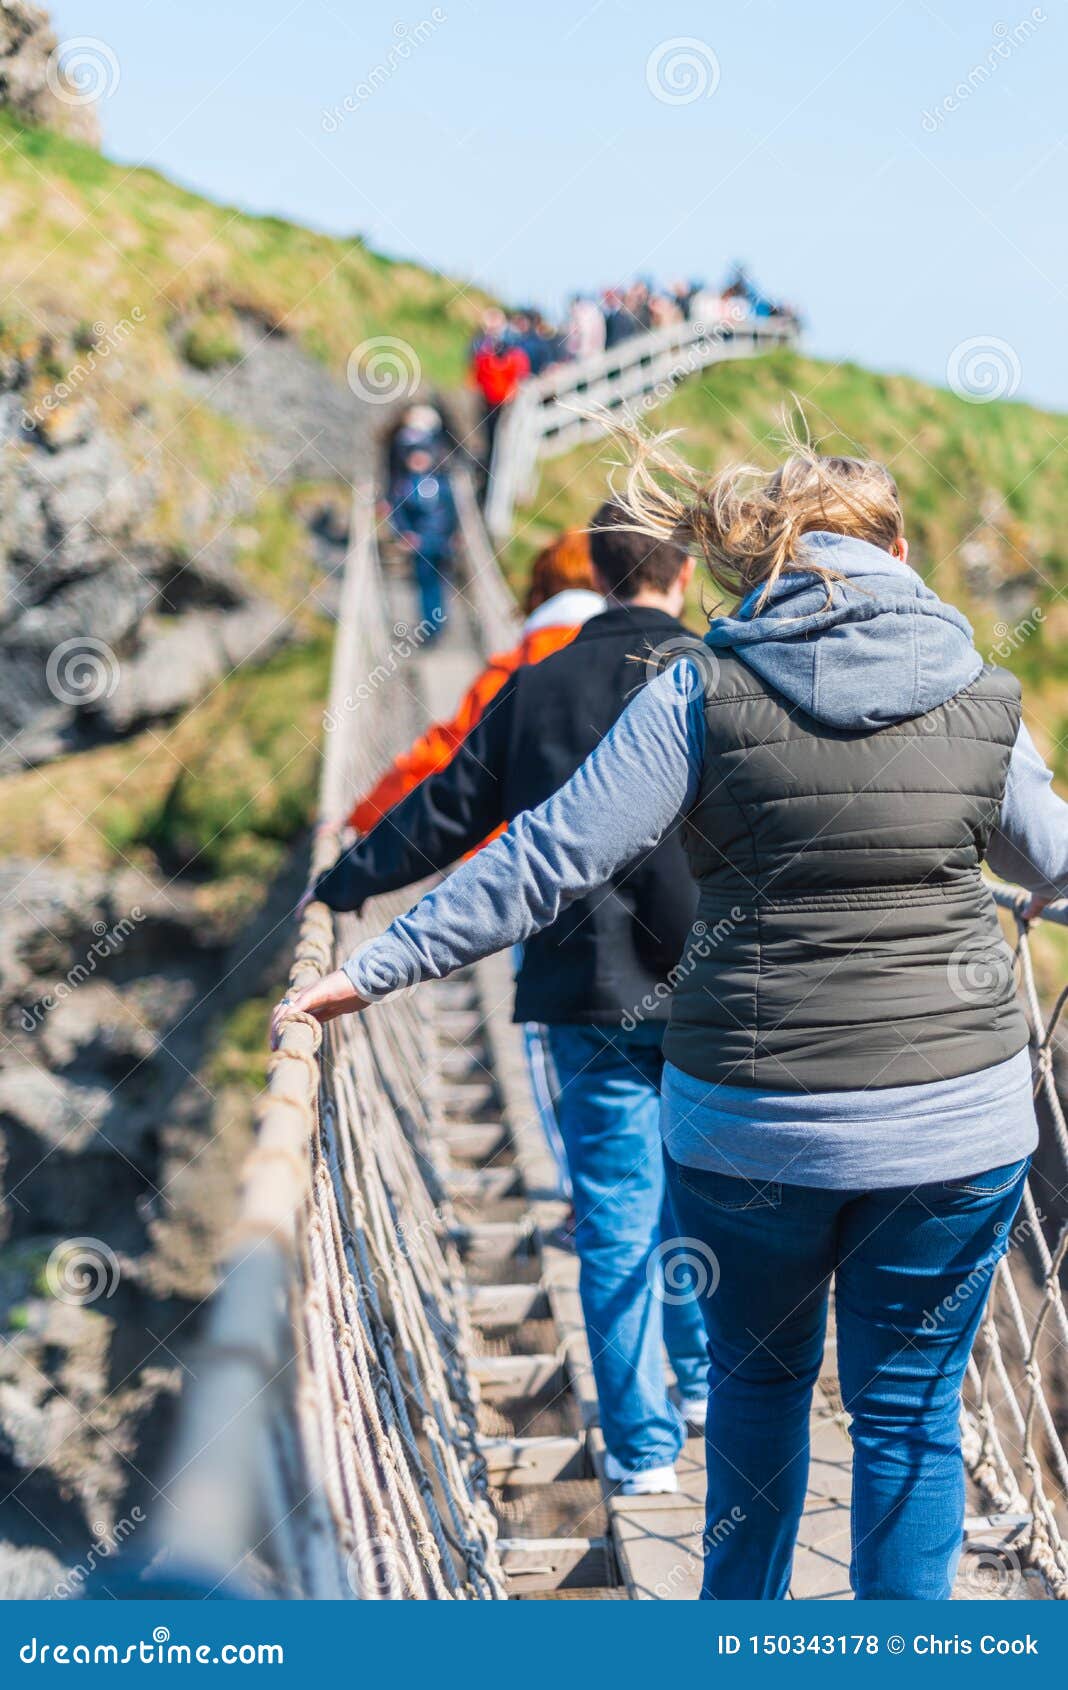 NORDIRLAND, GROSSBRITANNIEN - 8. APRIL 2019: Erschrockene Touristen kreuzen die gefährliche aber schöne Carrick-a-Redeseil-Brücke. Leute schauen unten und halten an, während sie die Seilbrücke in Irland an einem windigen Tag im April kreuzen